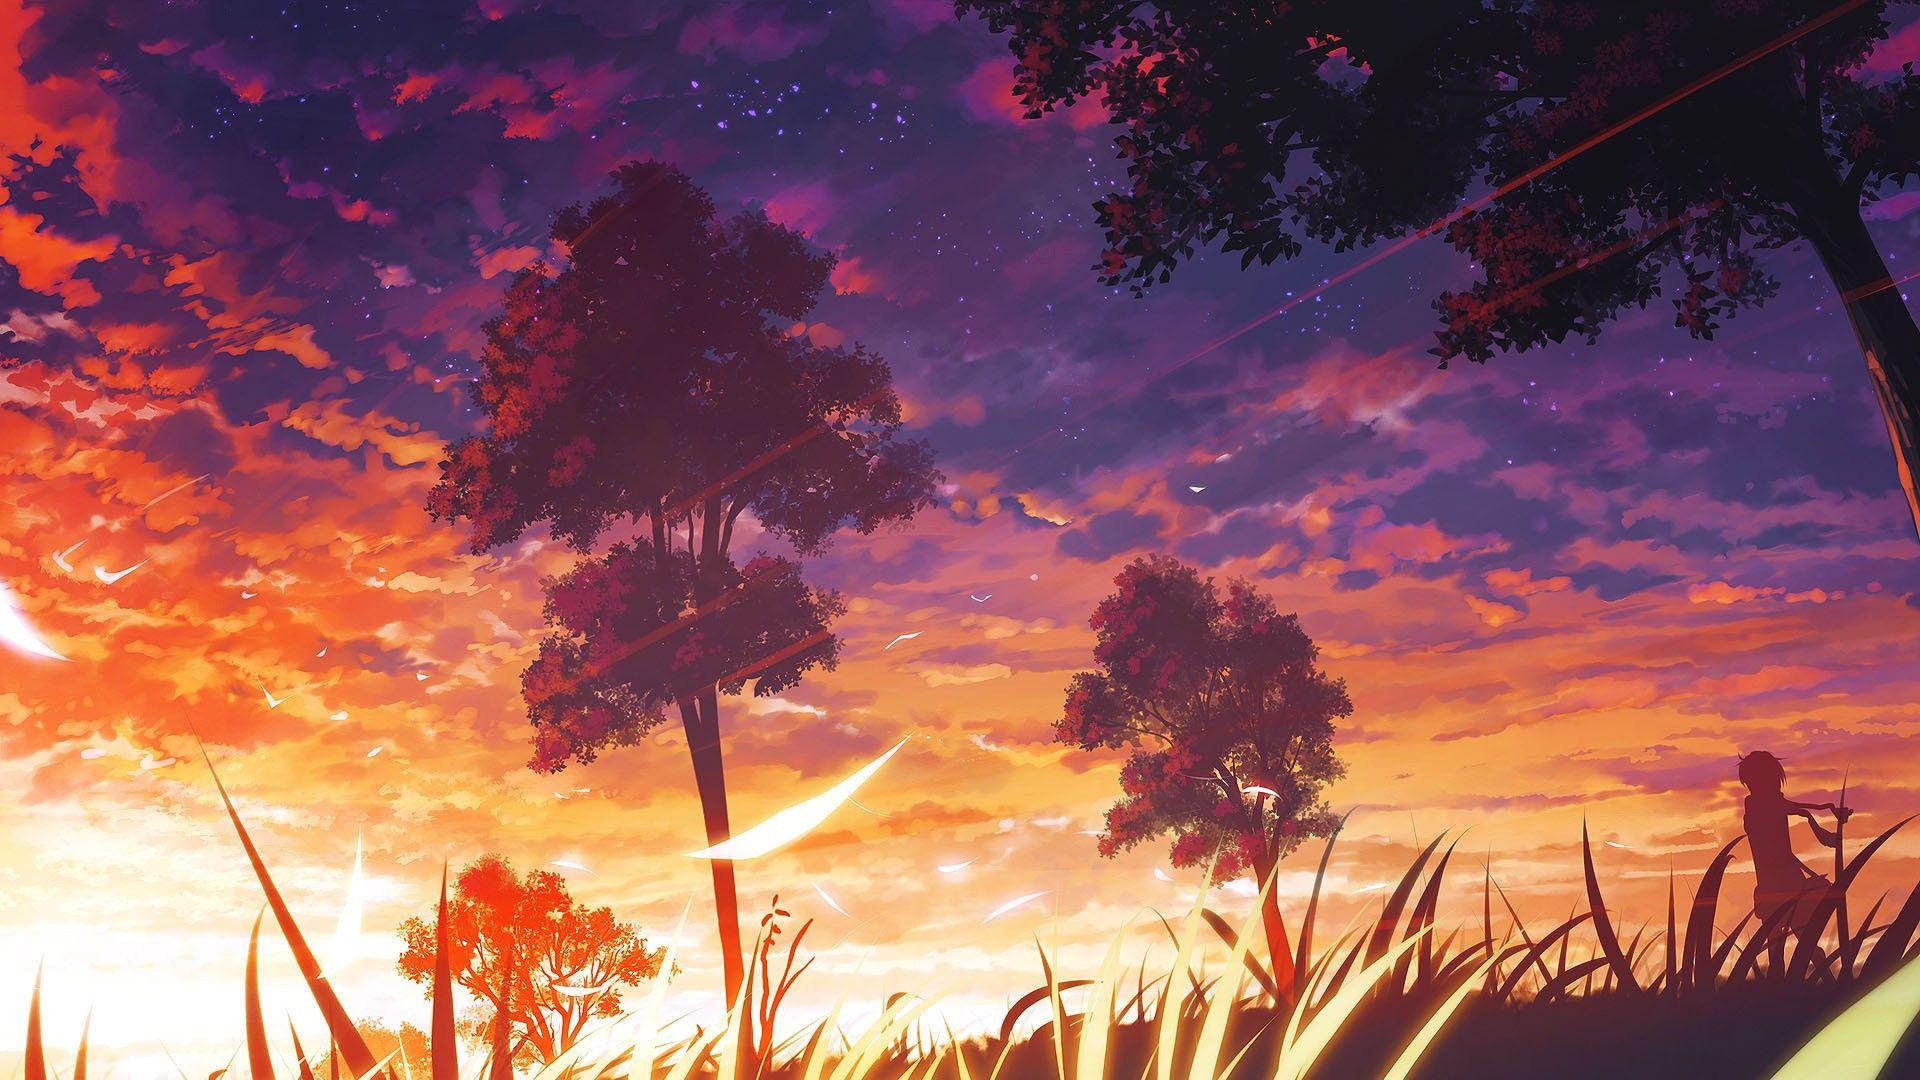 Sunset Anime Wallpaper [1920x1080] • R Wallpaper. Anime Scenery, Scenery Wallpaper, Anime Scenery Wallpaper